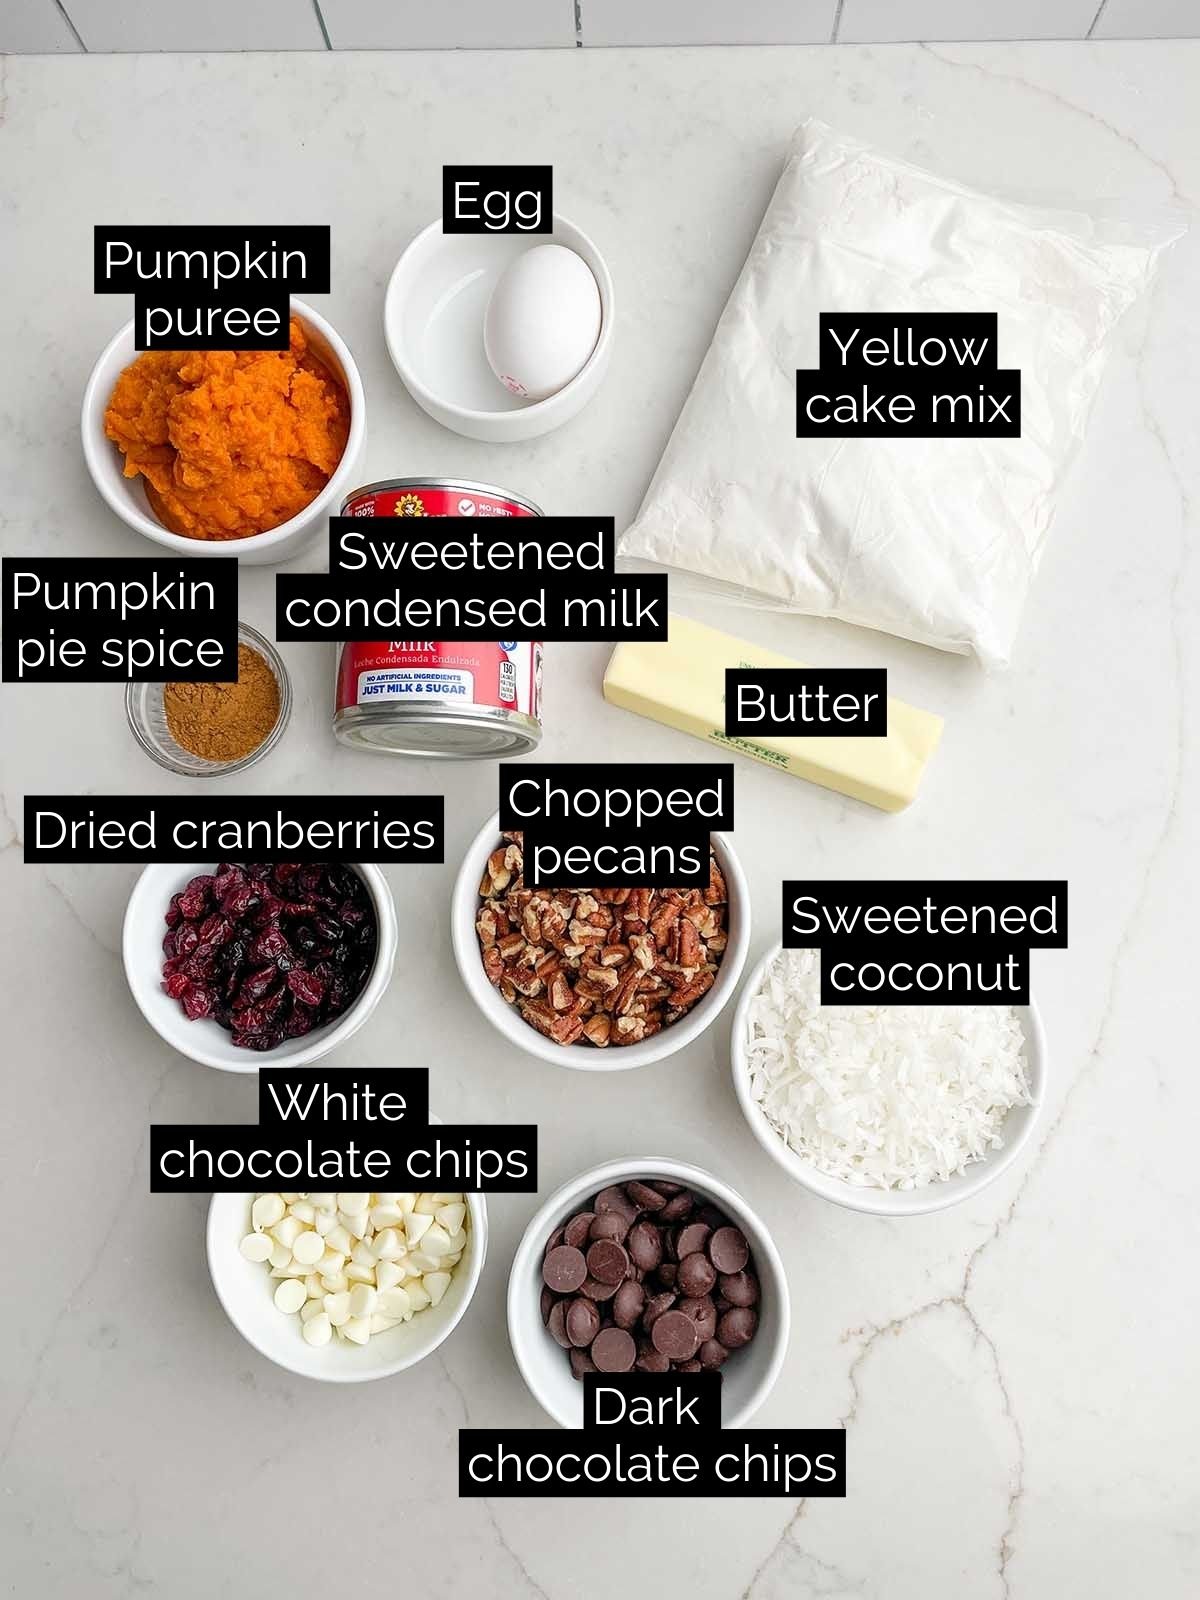 pumpkin yellow cake mix recipe ingredients.